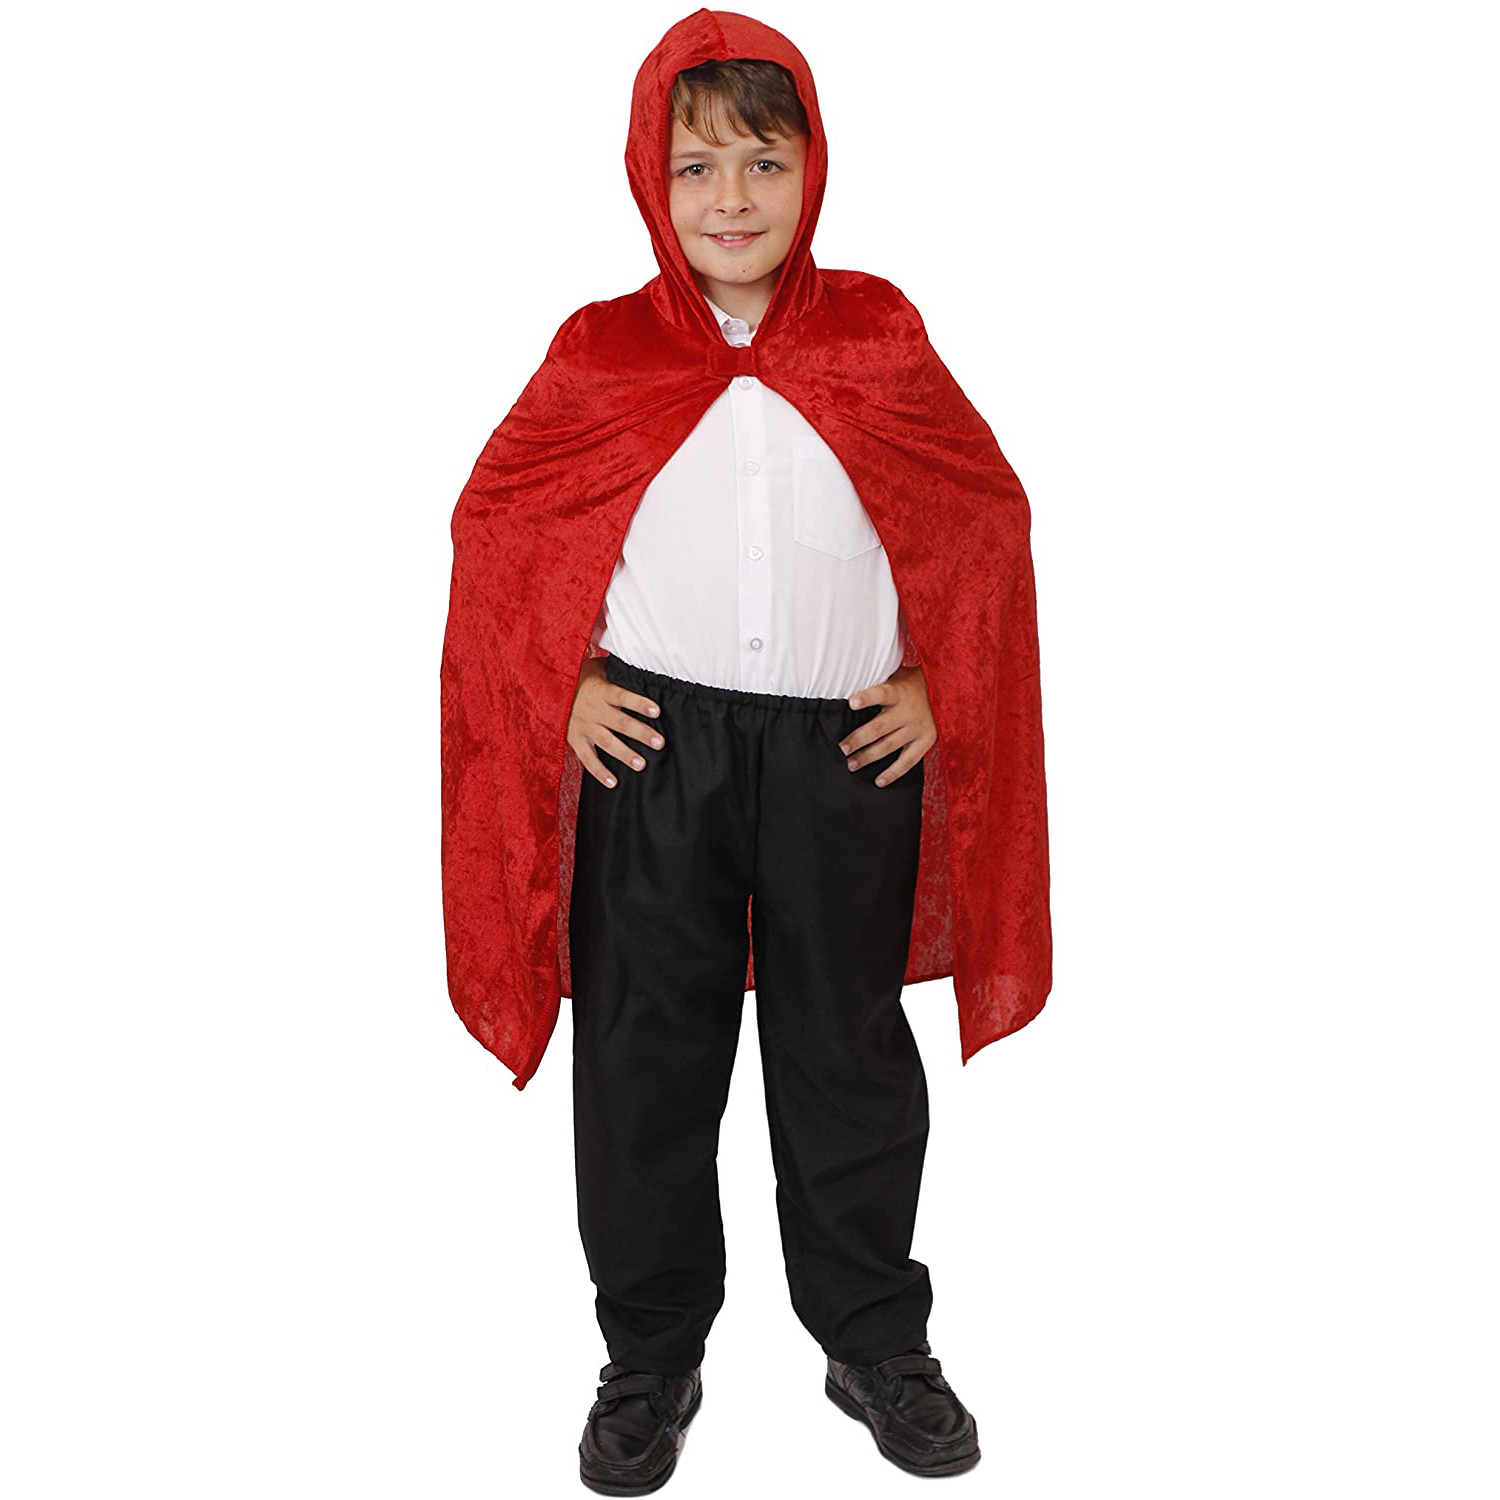 CHILDS RED VELOUR VELVET HOODED CAPE HALLOWEEN FANCY DRESS COSTUME ...